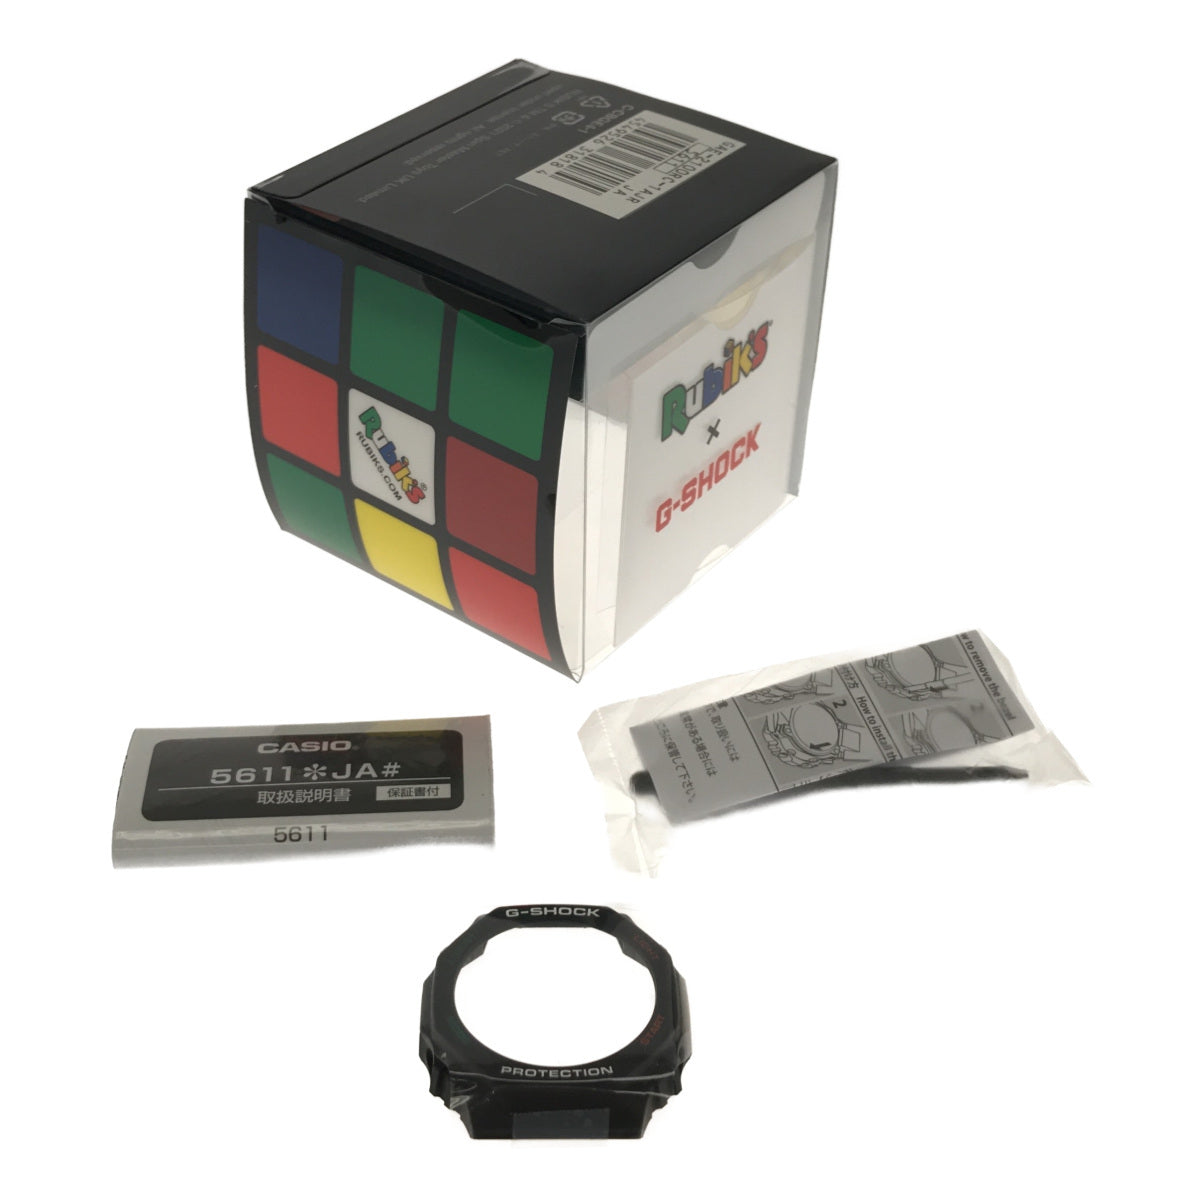 GAE-2100RC-1AJR Rubik’s Cube